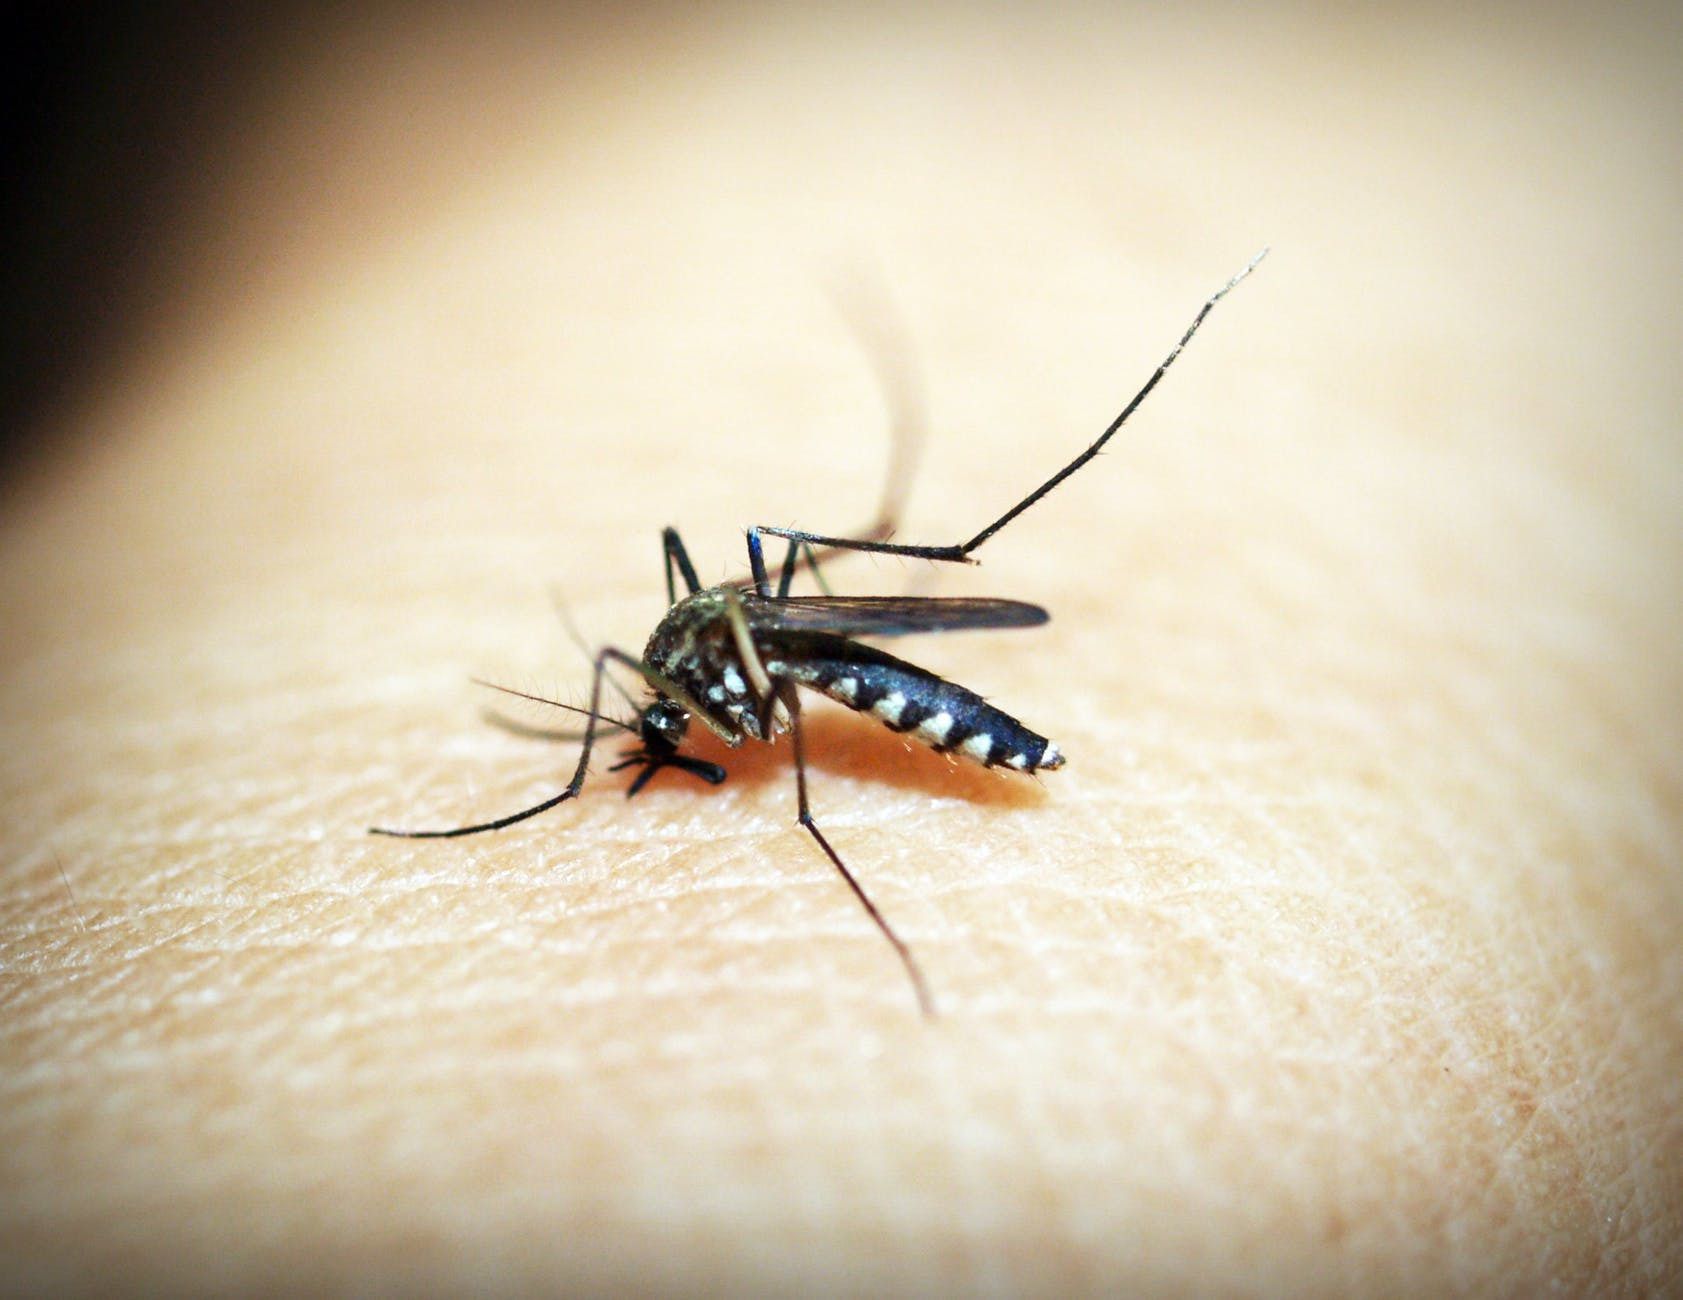 Вчені розповіли, яких людей комарі кусають частіше за інших. Цих людей комарі кусають в першу чергу: дізнайтеся, чи є ви у групі ризику.